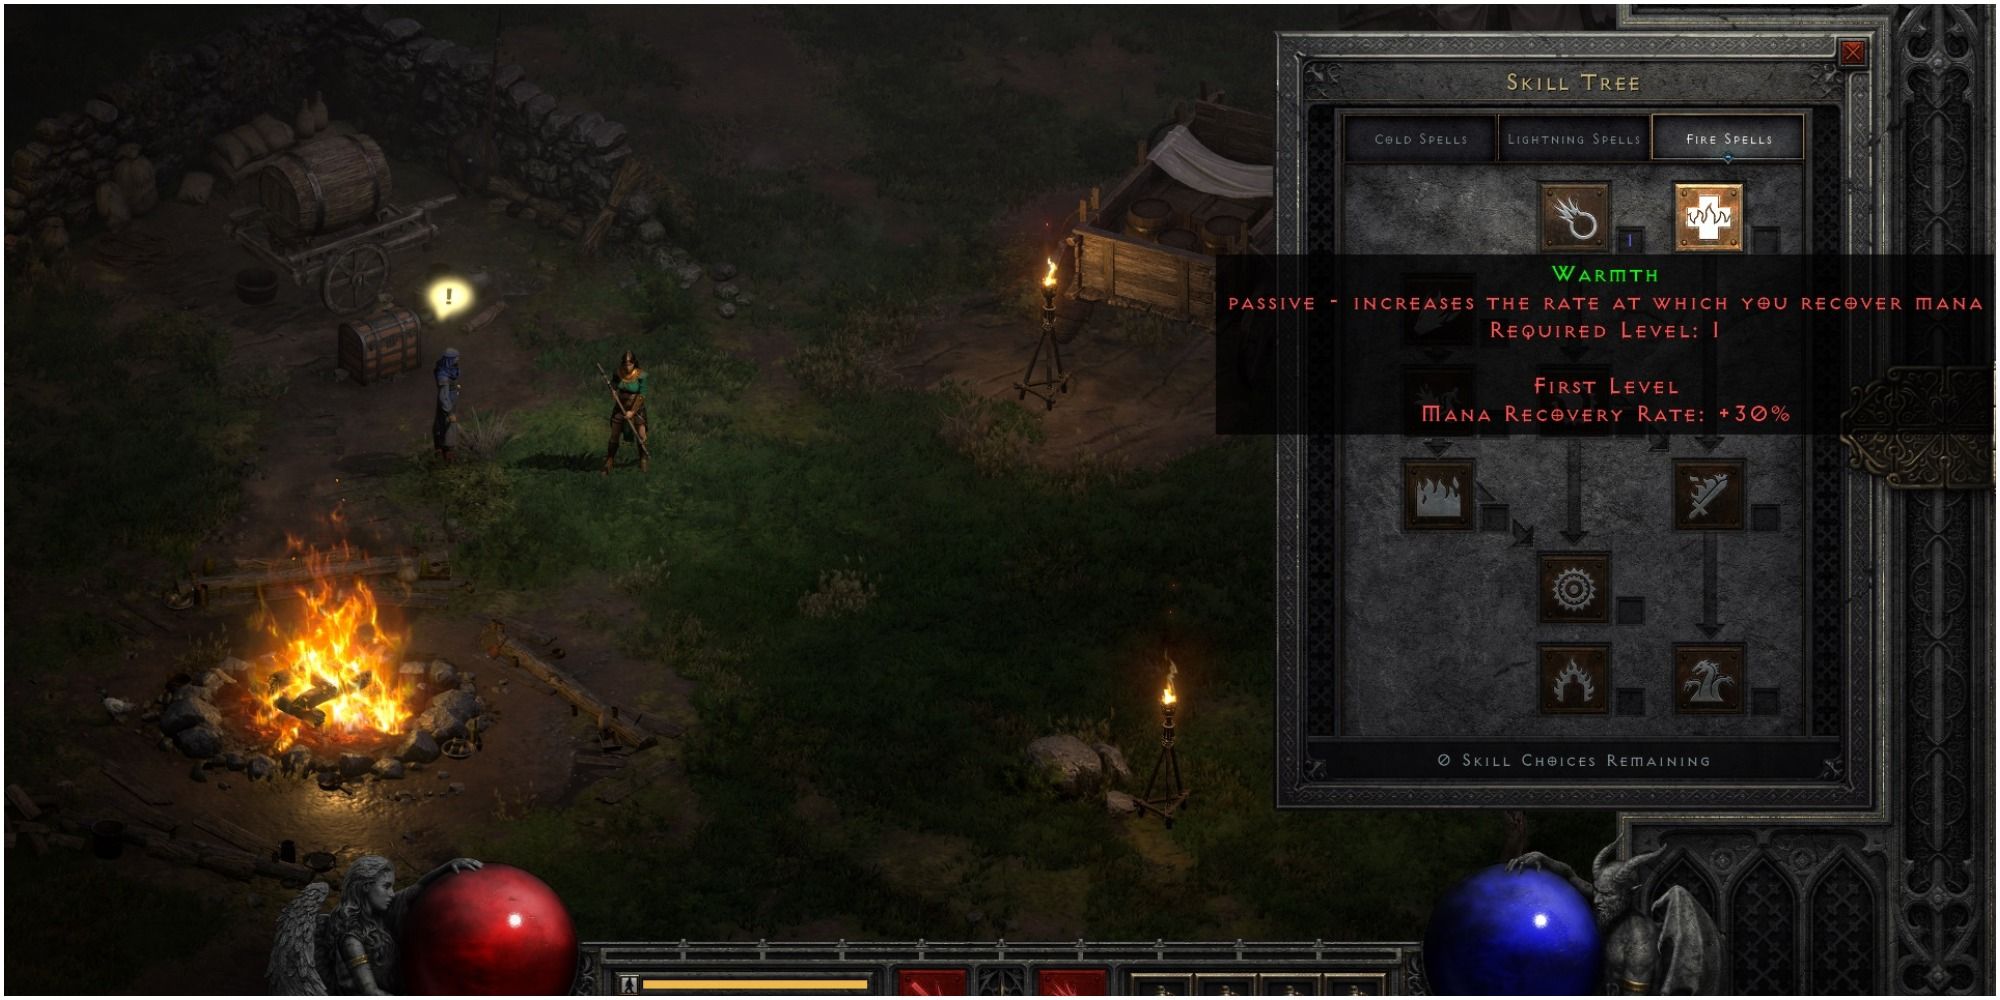 Diablo 2 Resurrected Warmth Description At Level One